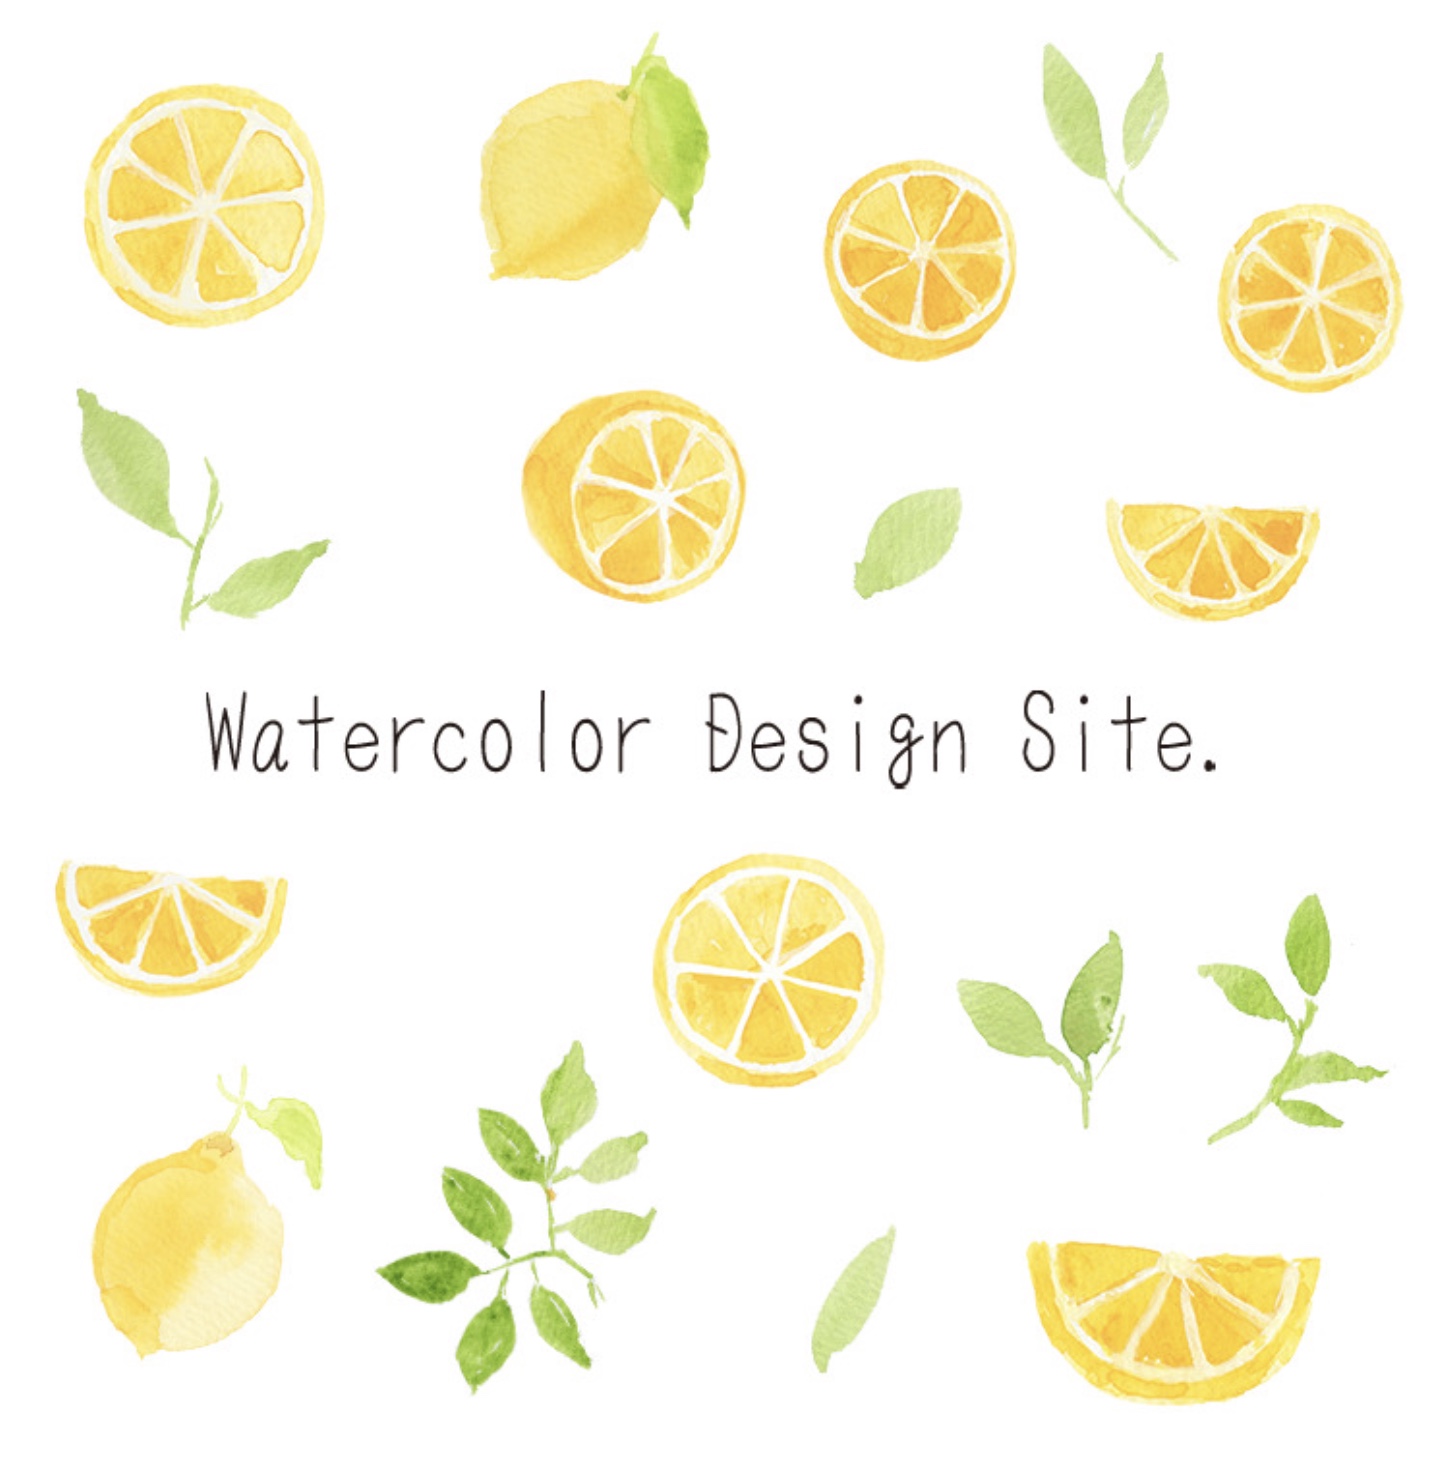 Watercolor Design Site.サンプル